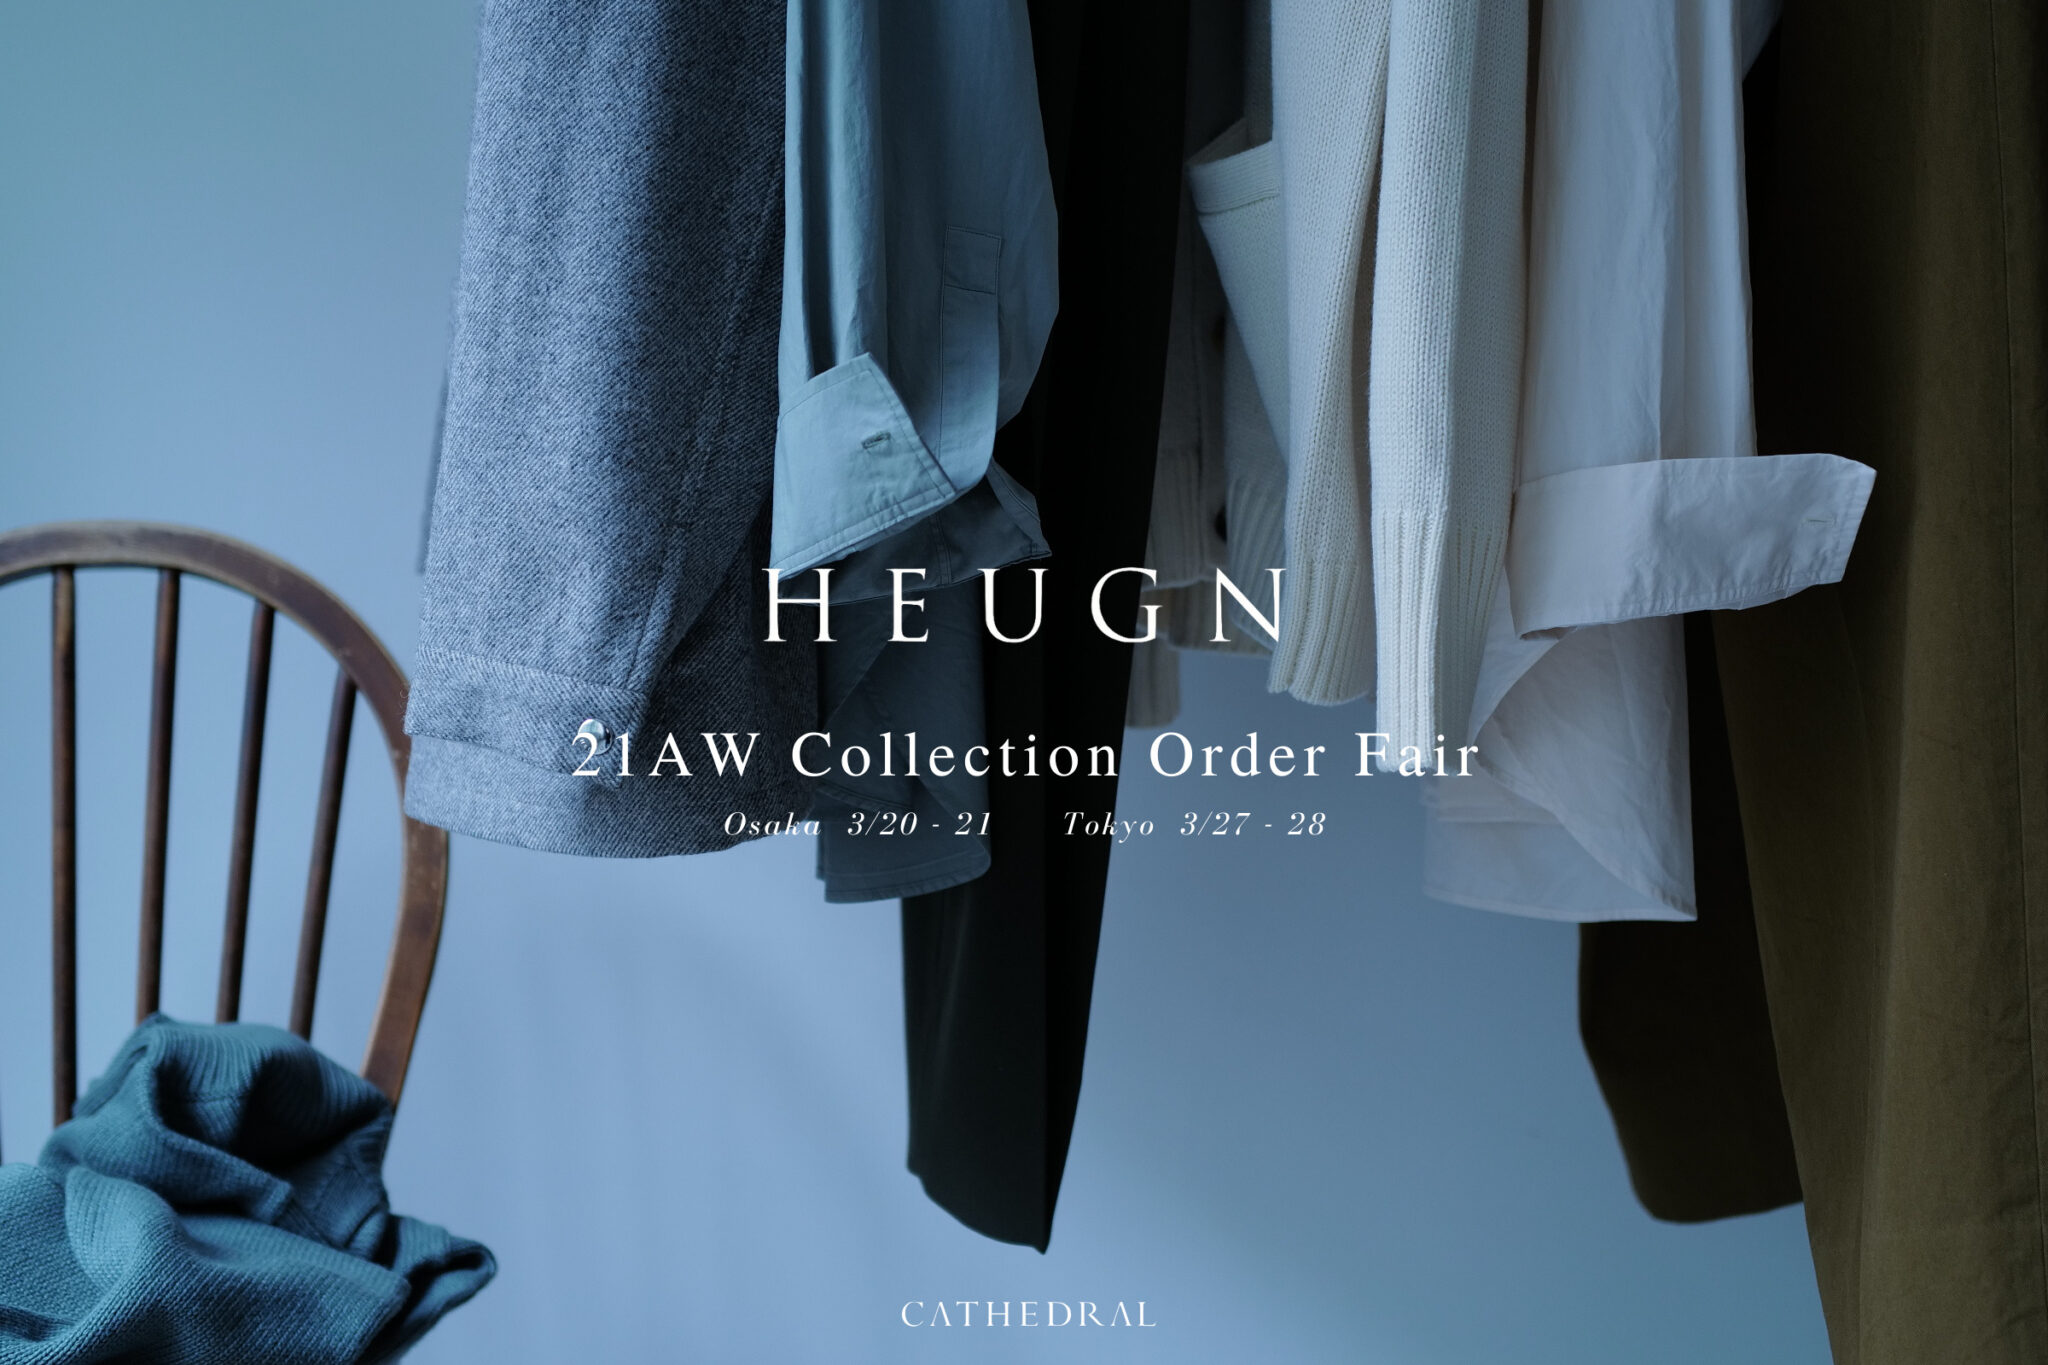 HEUGN 21AW Collection Order Fair